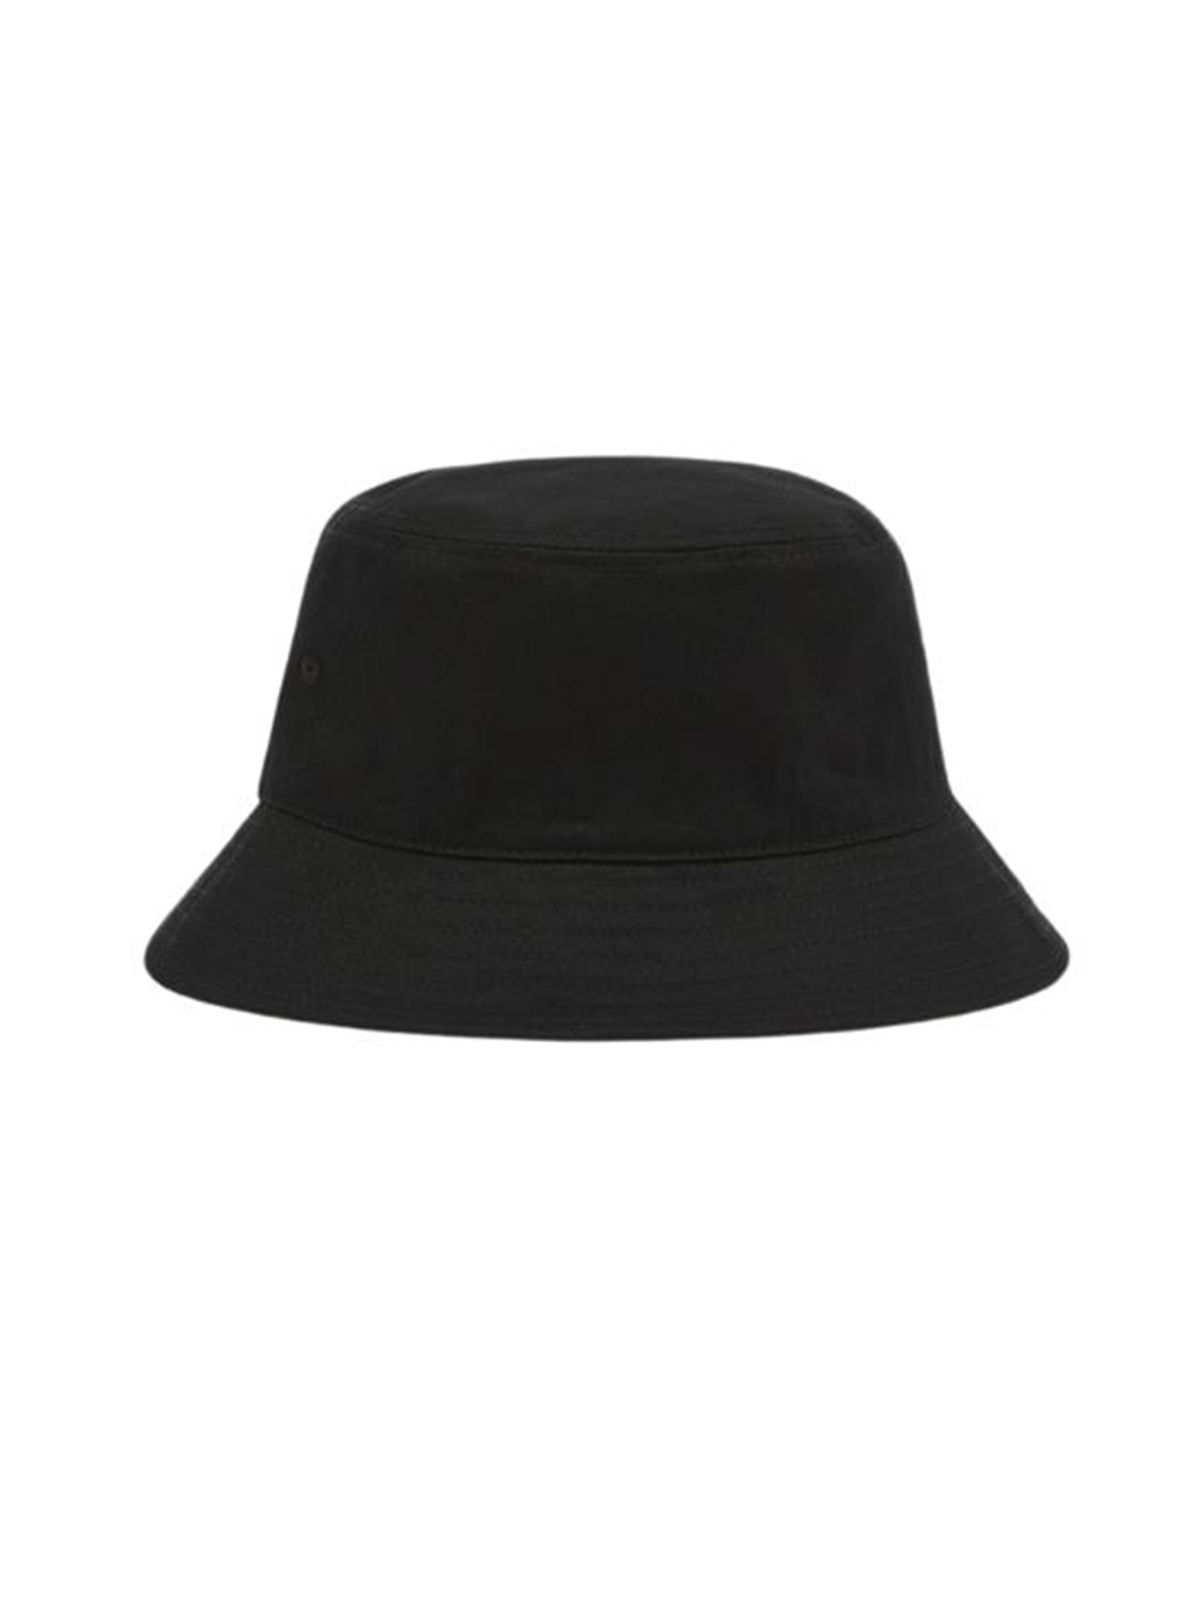 Shop Dickies Men's Hat: Clarks Grove Bucket